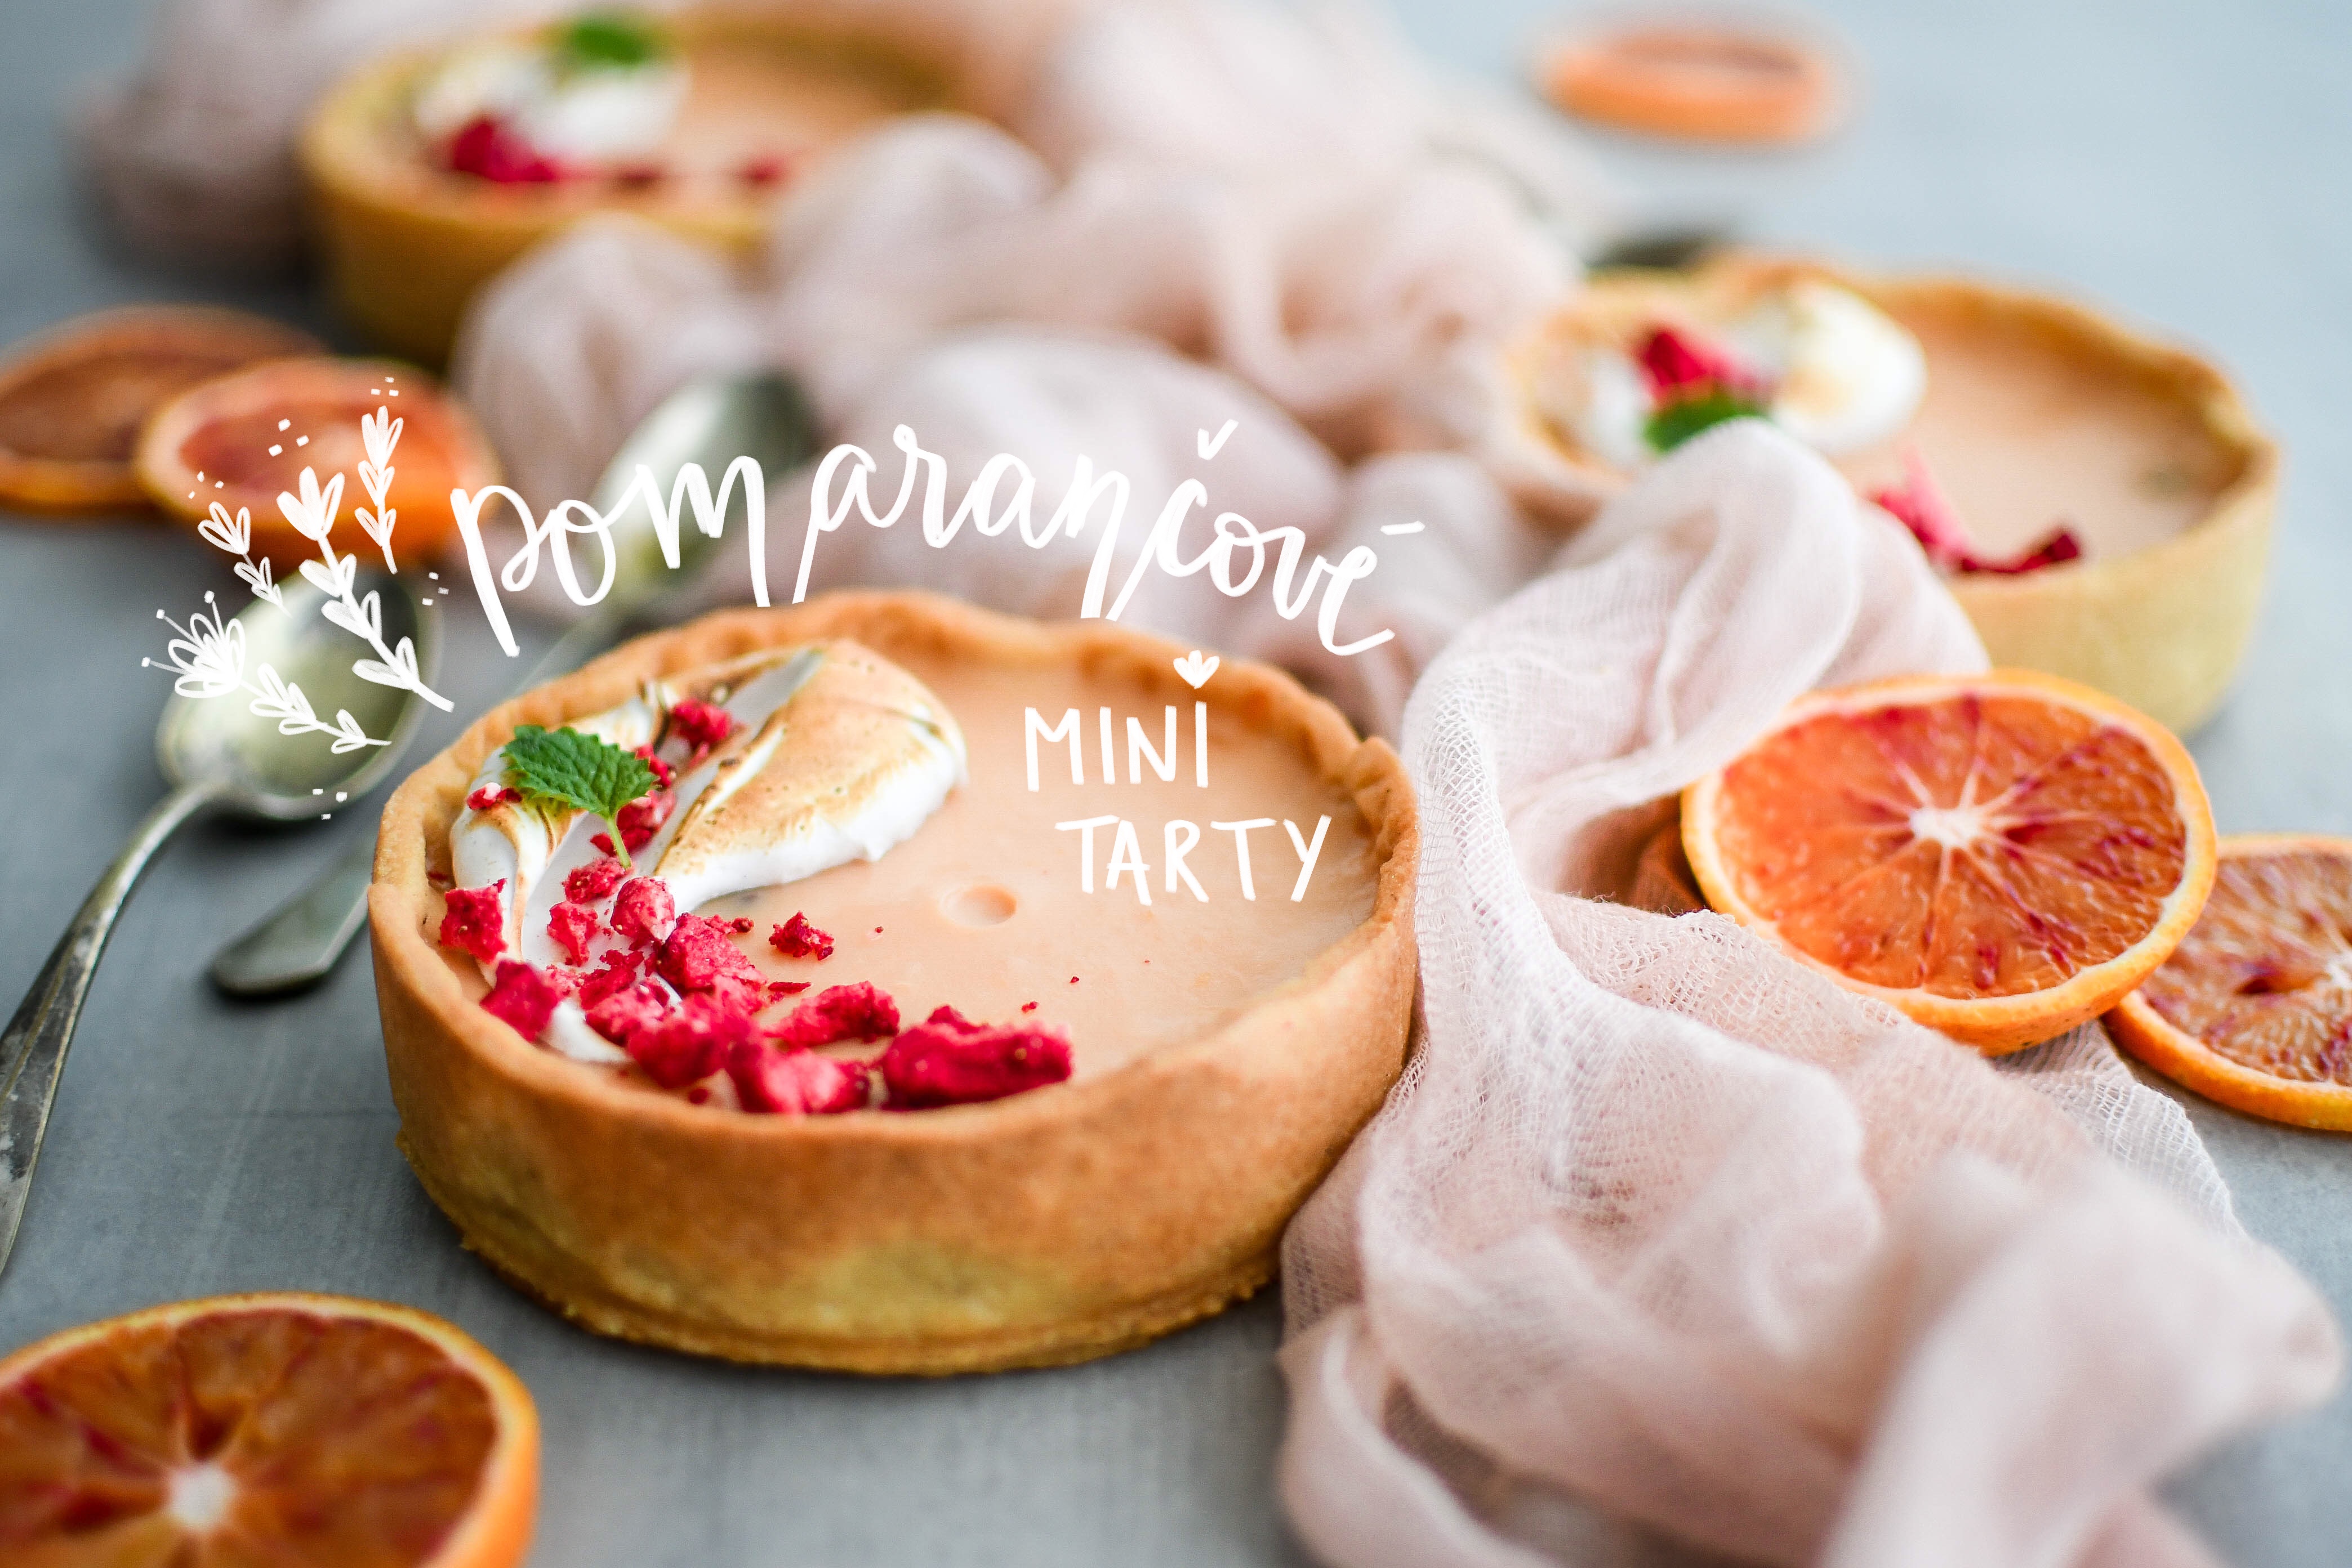 blood orange tarts | pomarancove mini tarty